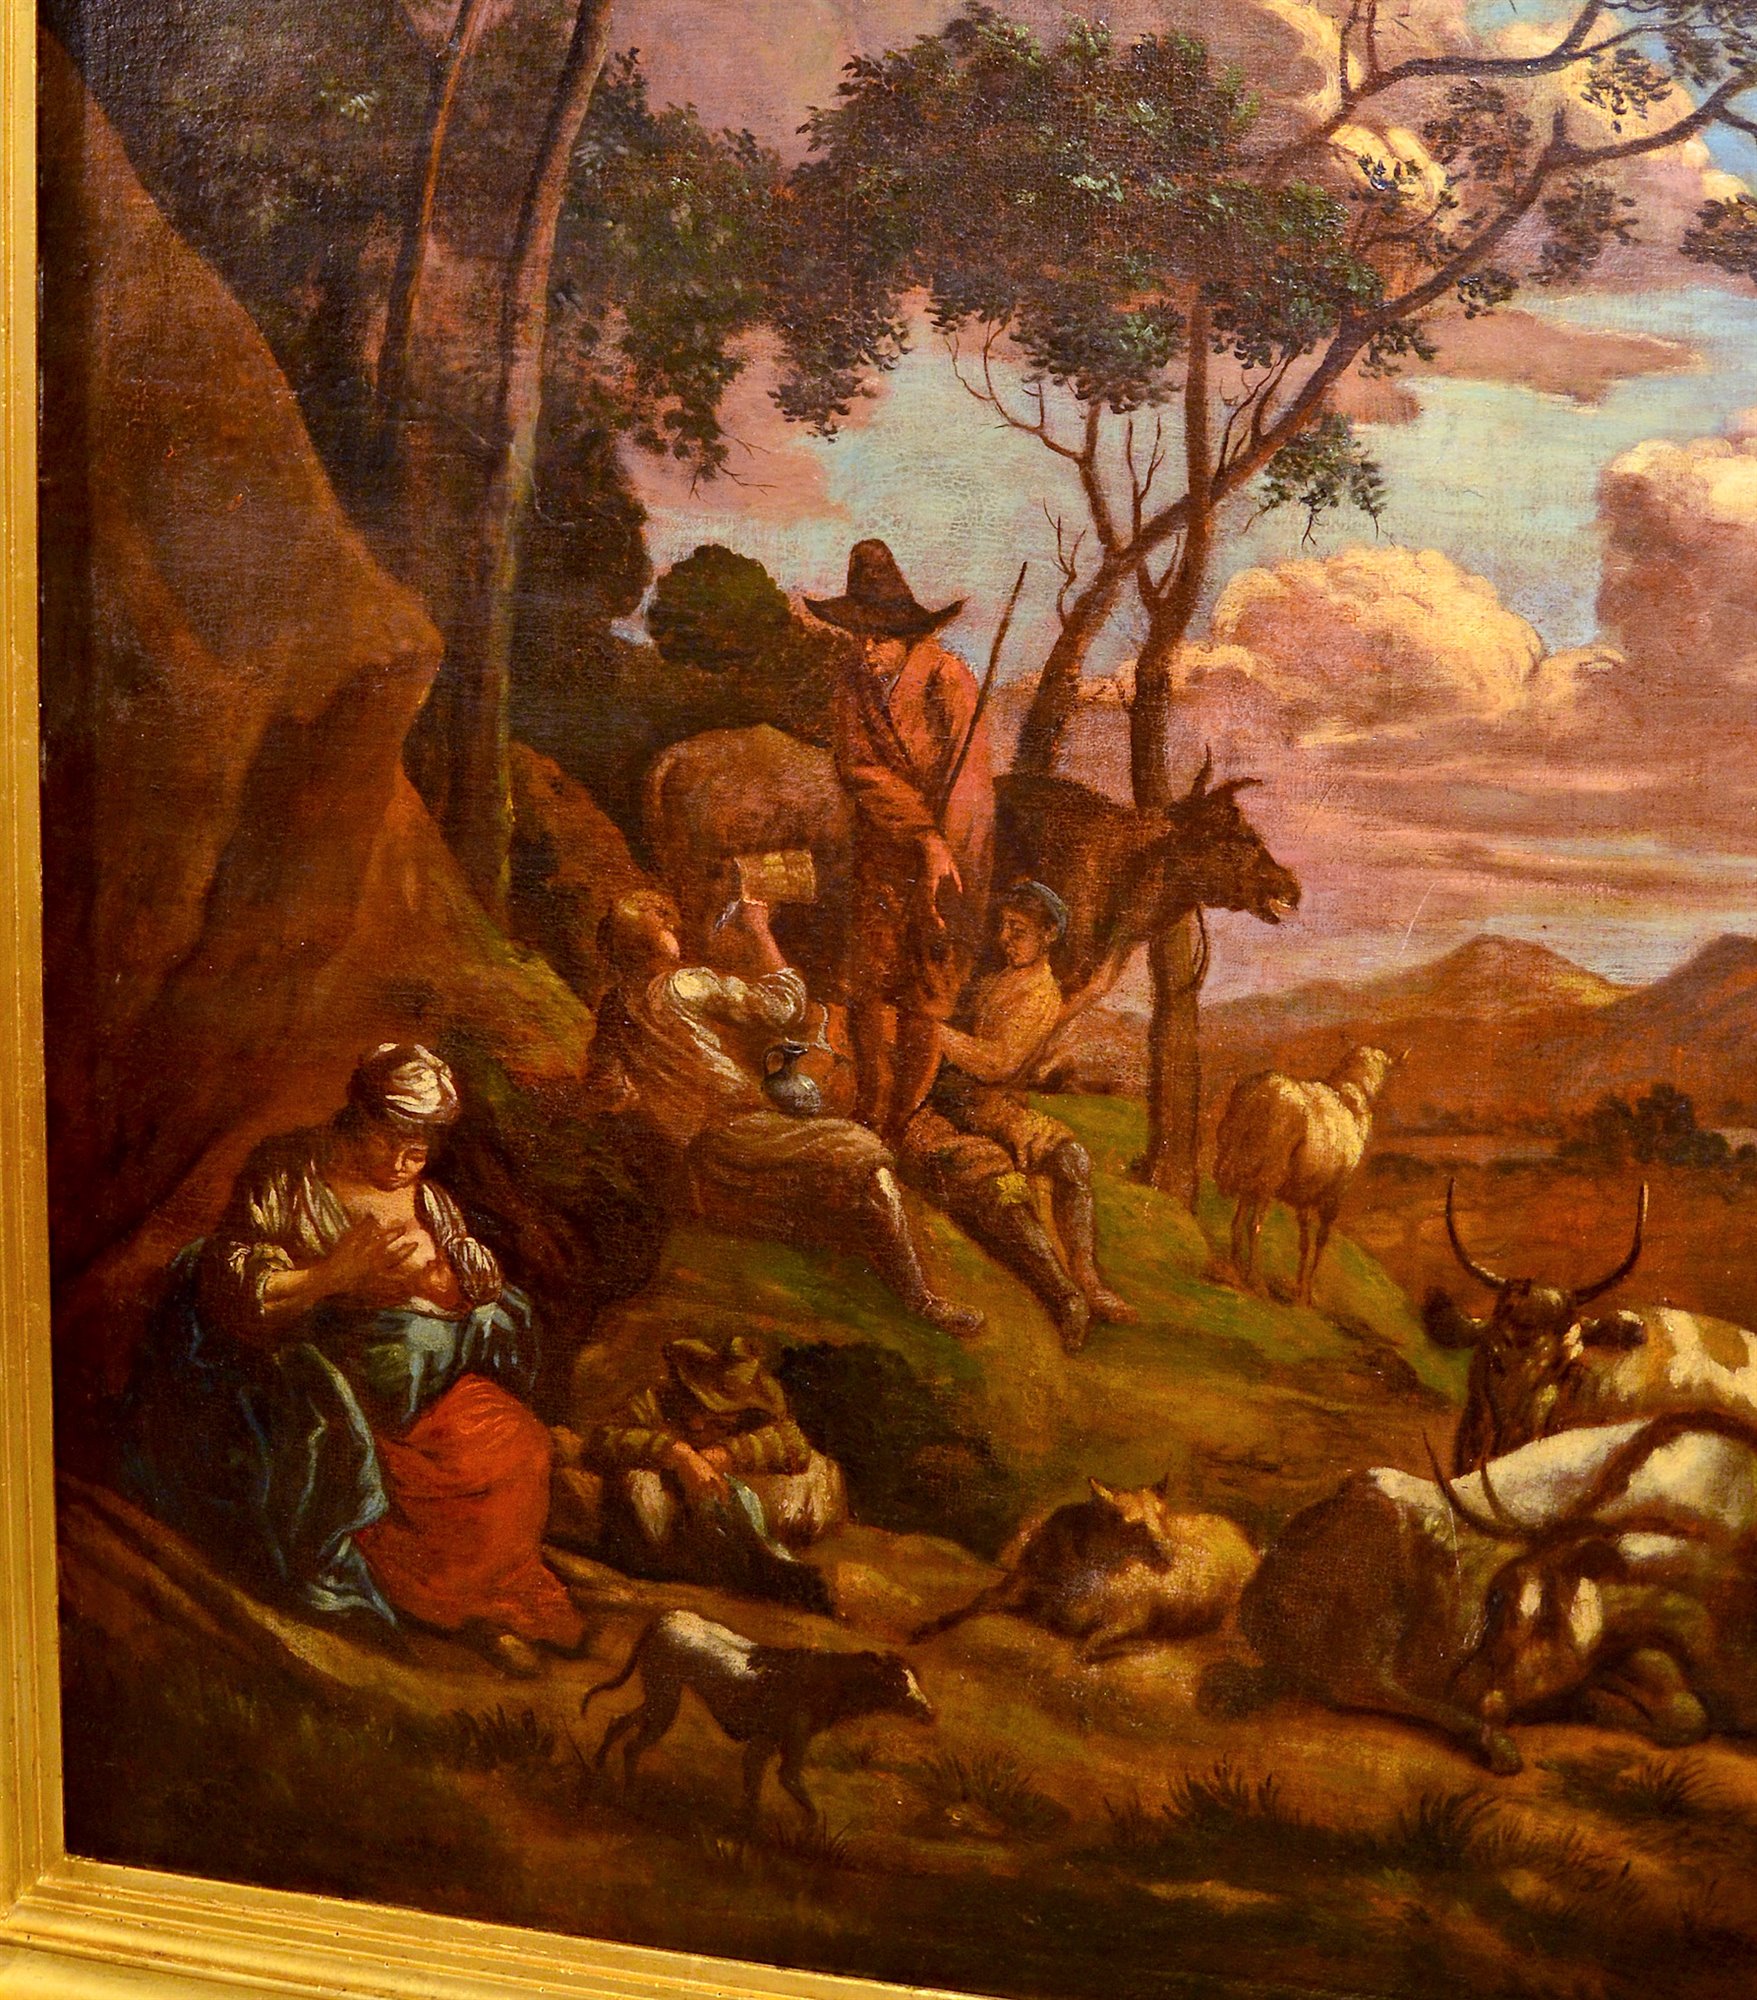 Paesaggio con pastori e armenti nella campagna romana